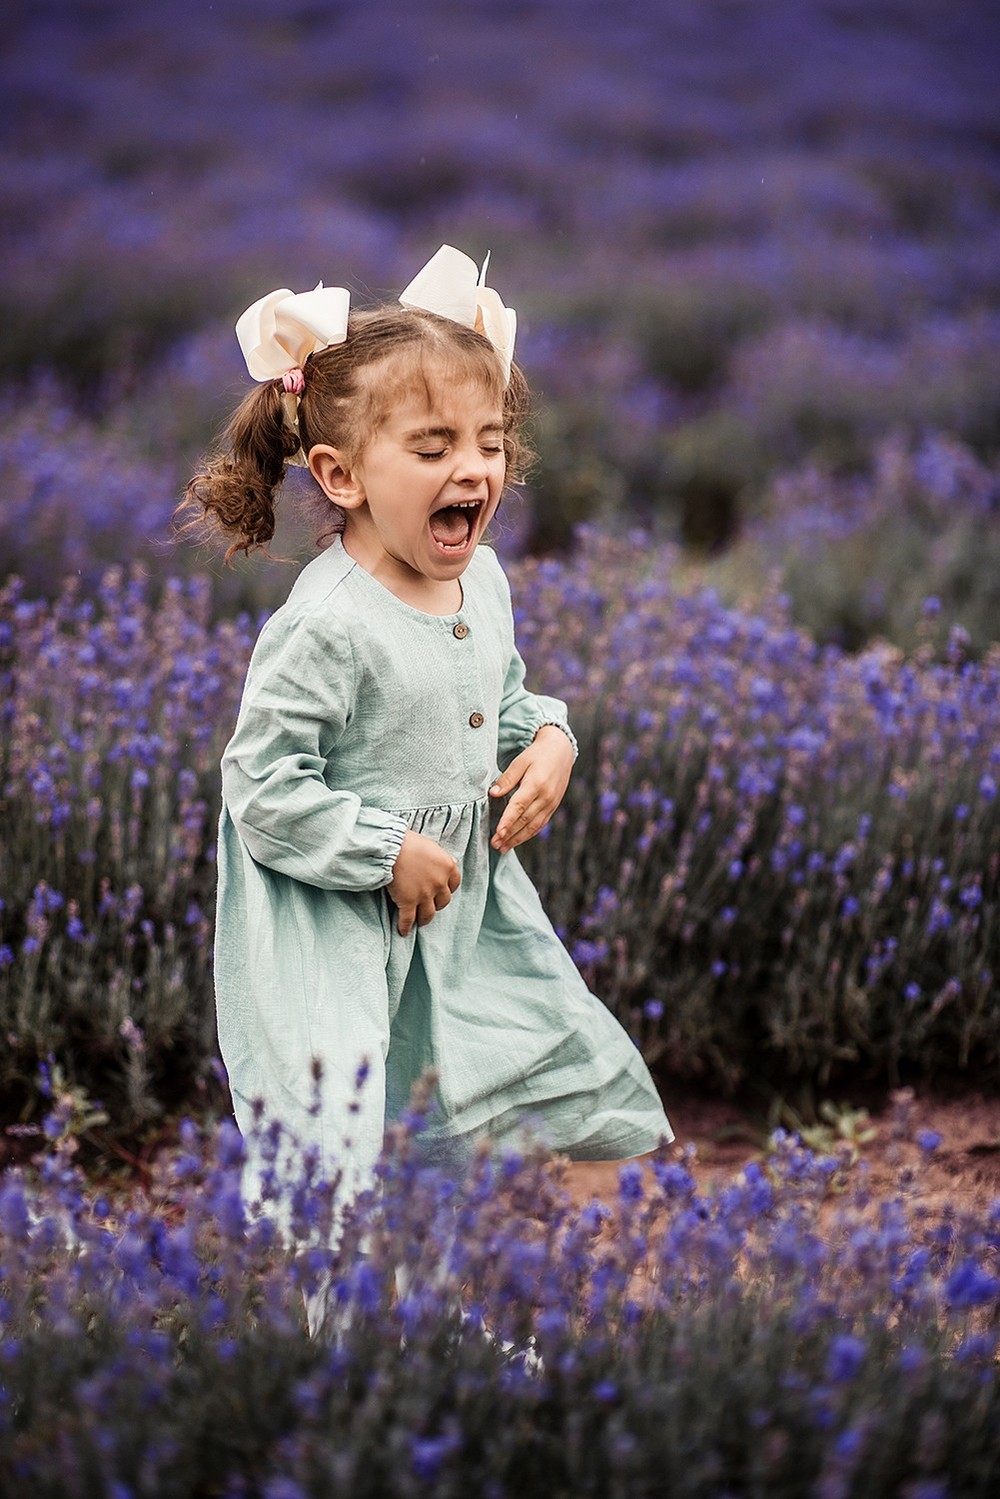 Детская фотосессия - Теона в лавандовом поле